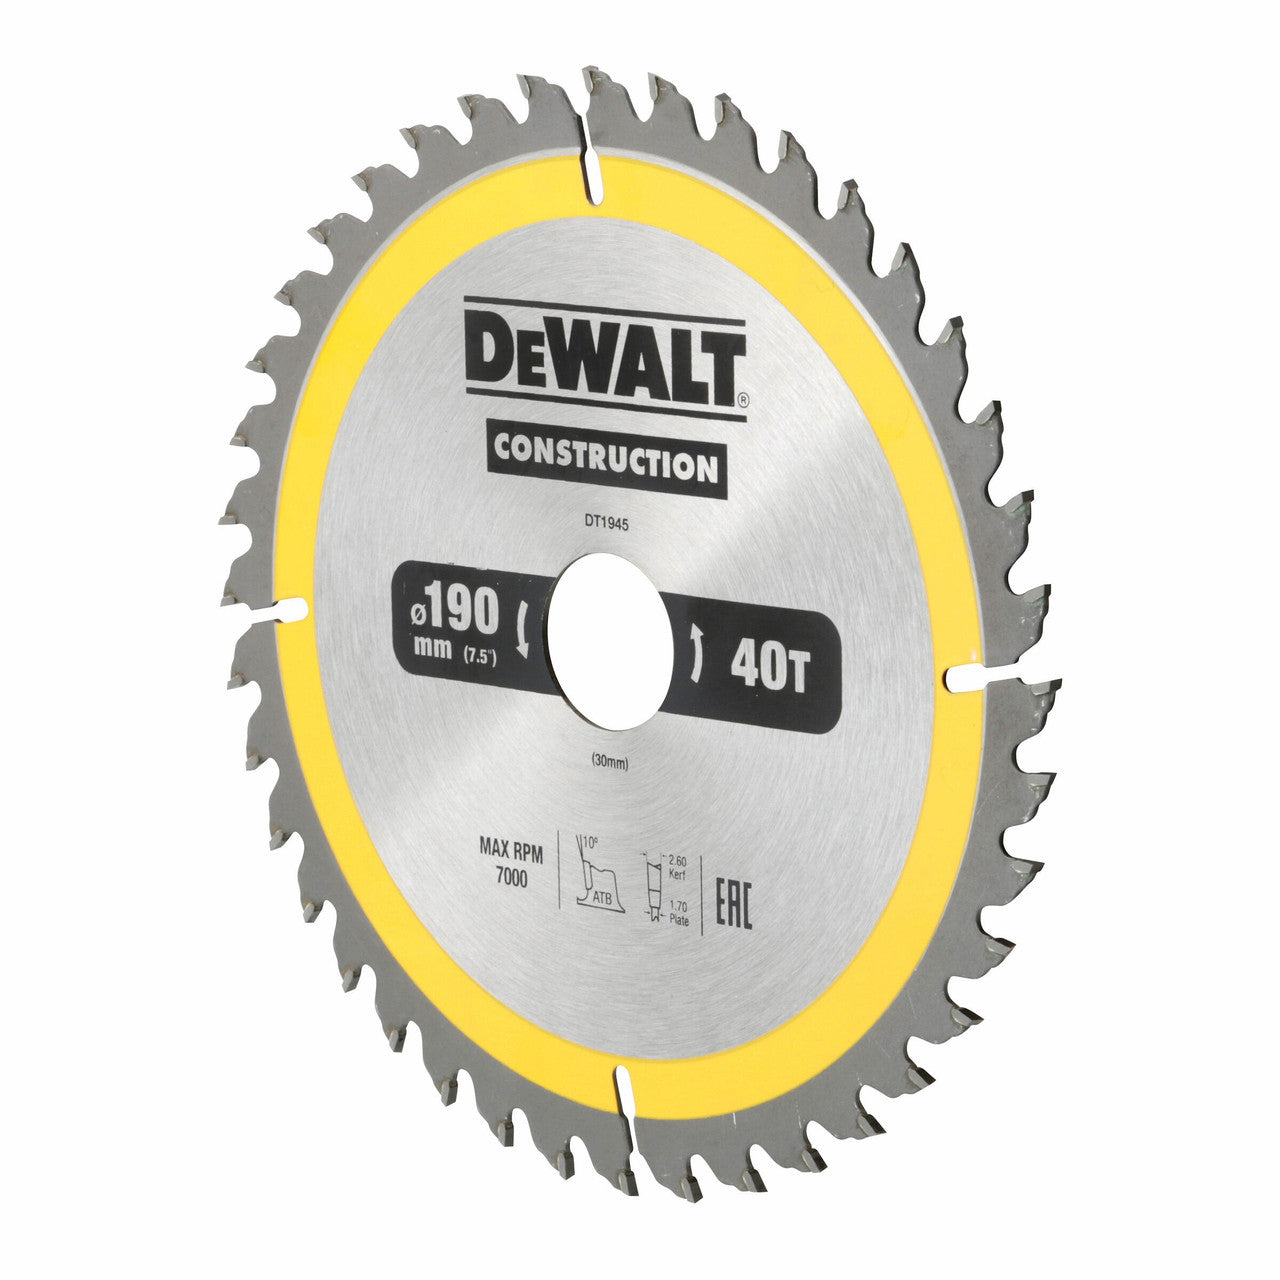 Dewalt DT1945 Construction Circular Saw Blade 190 x 30mm x 40T